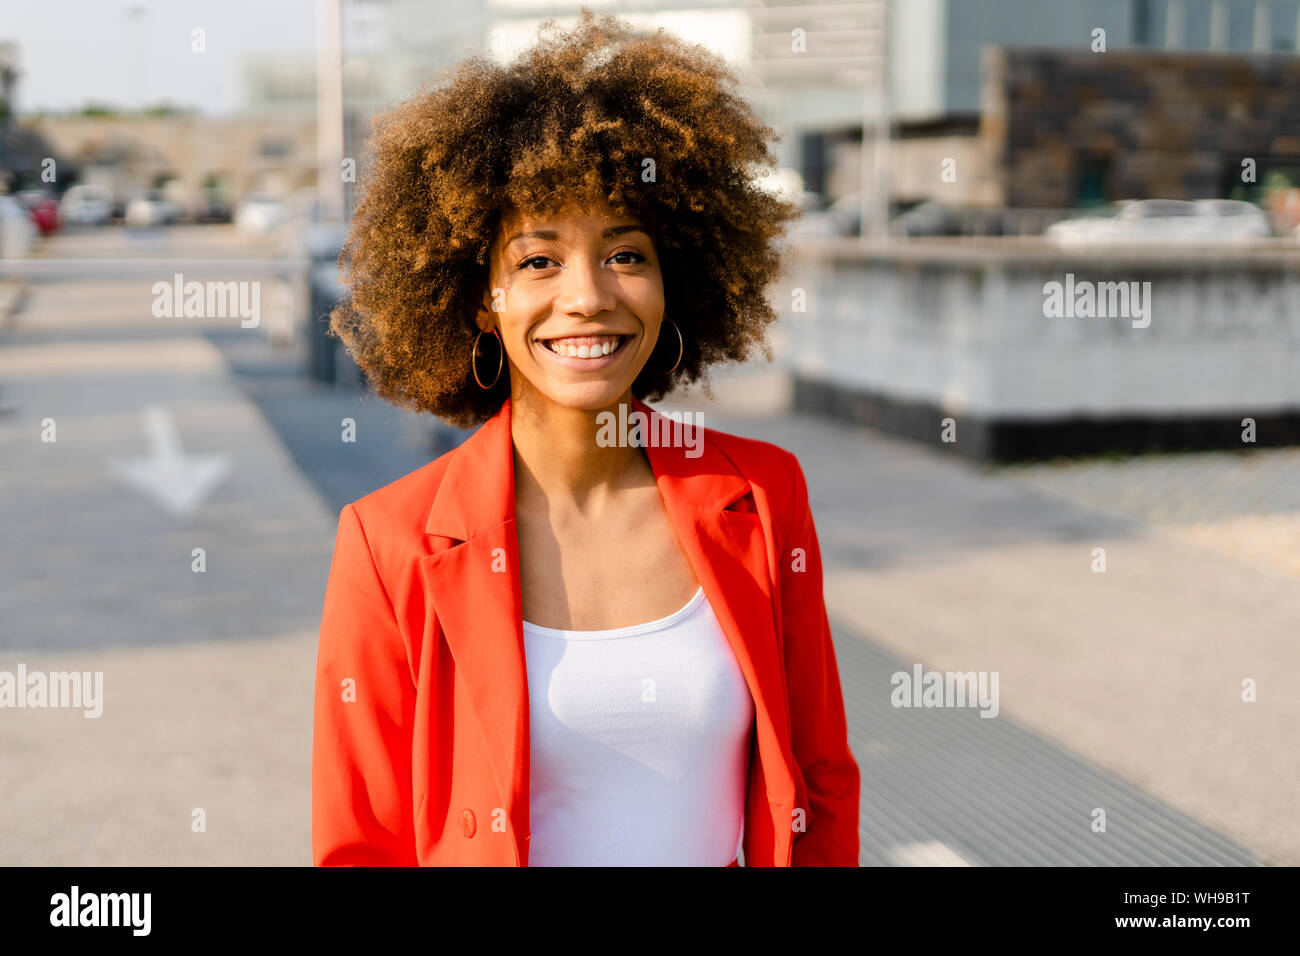 Portrait von lächelnden jungen Frau das Tragen der roten Anzug Mantel Stockfoto